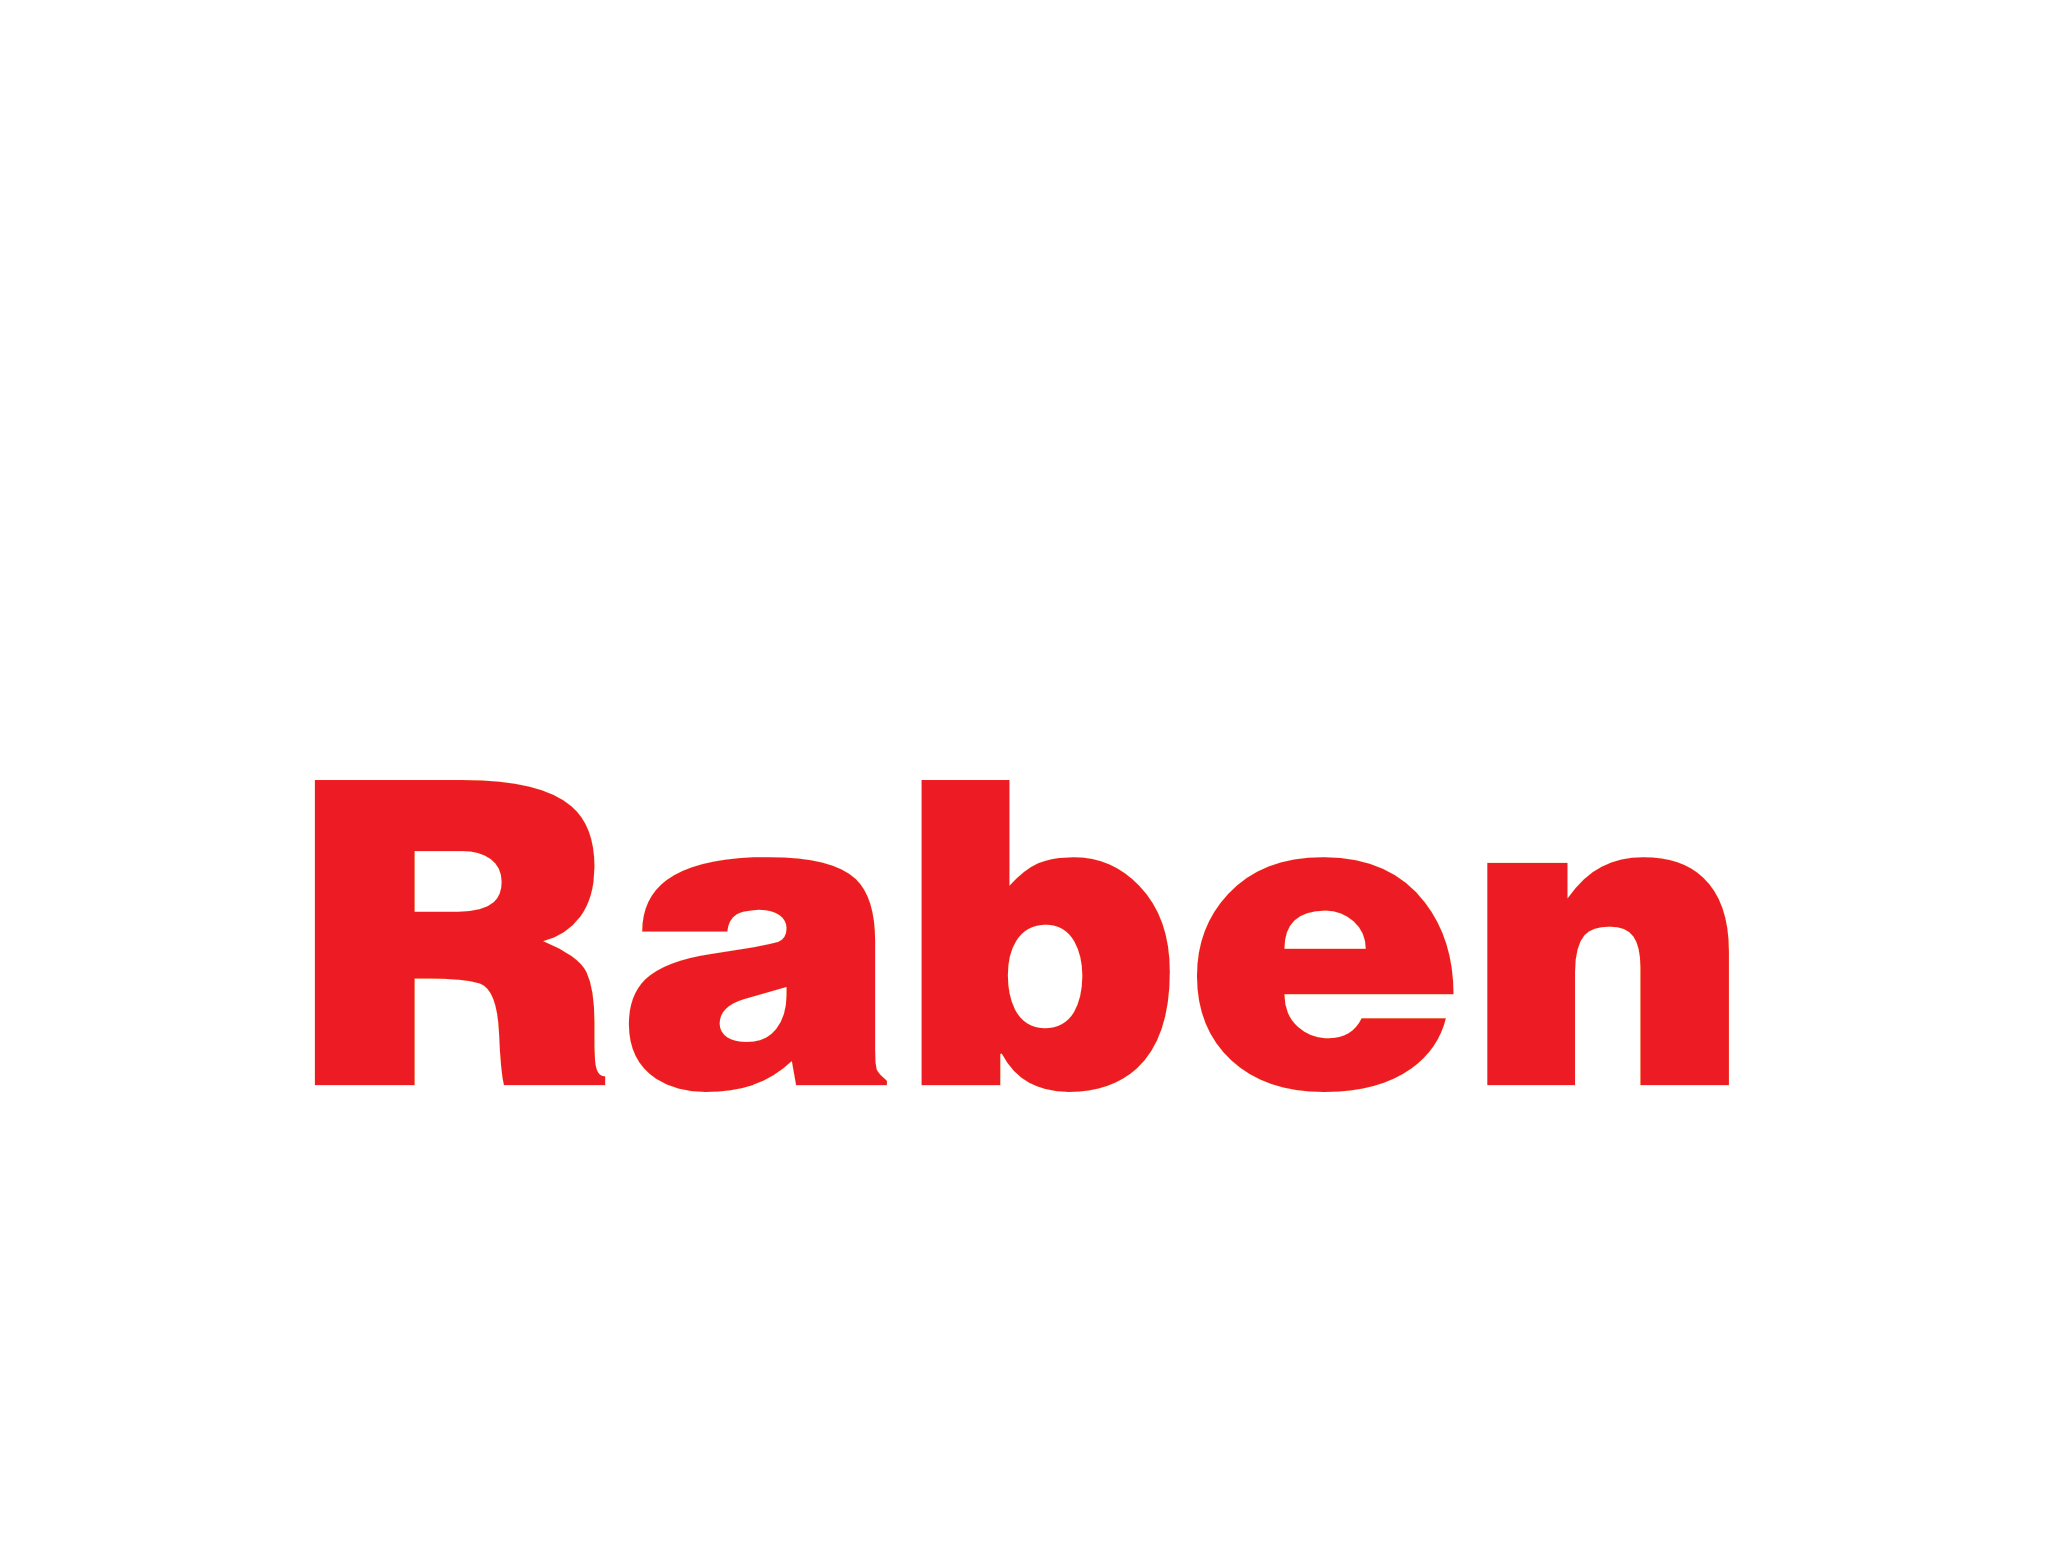 Grafika przedstawia logo firmy Raben. Logo składa się z czerwonego napisu "Raben" na białym tle. Styl czcionki jest prosty i wyraźny, co sprawia, że logo jest łatwe do odczytania.